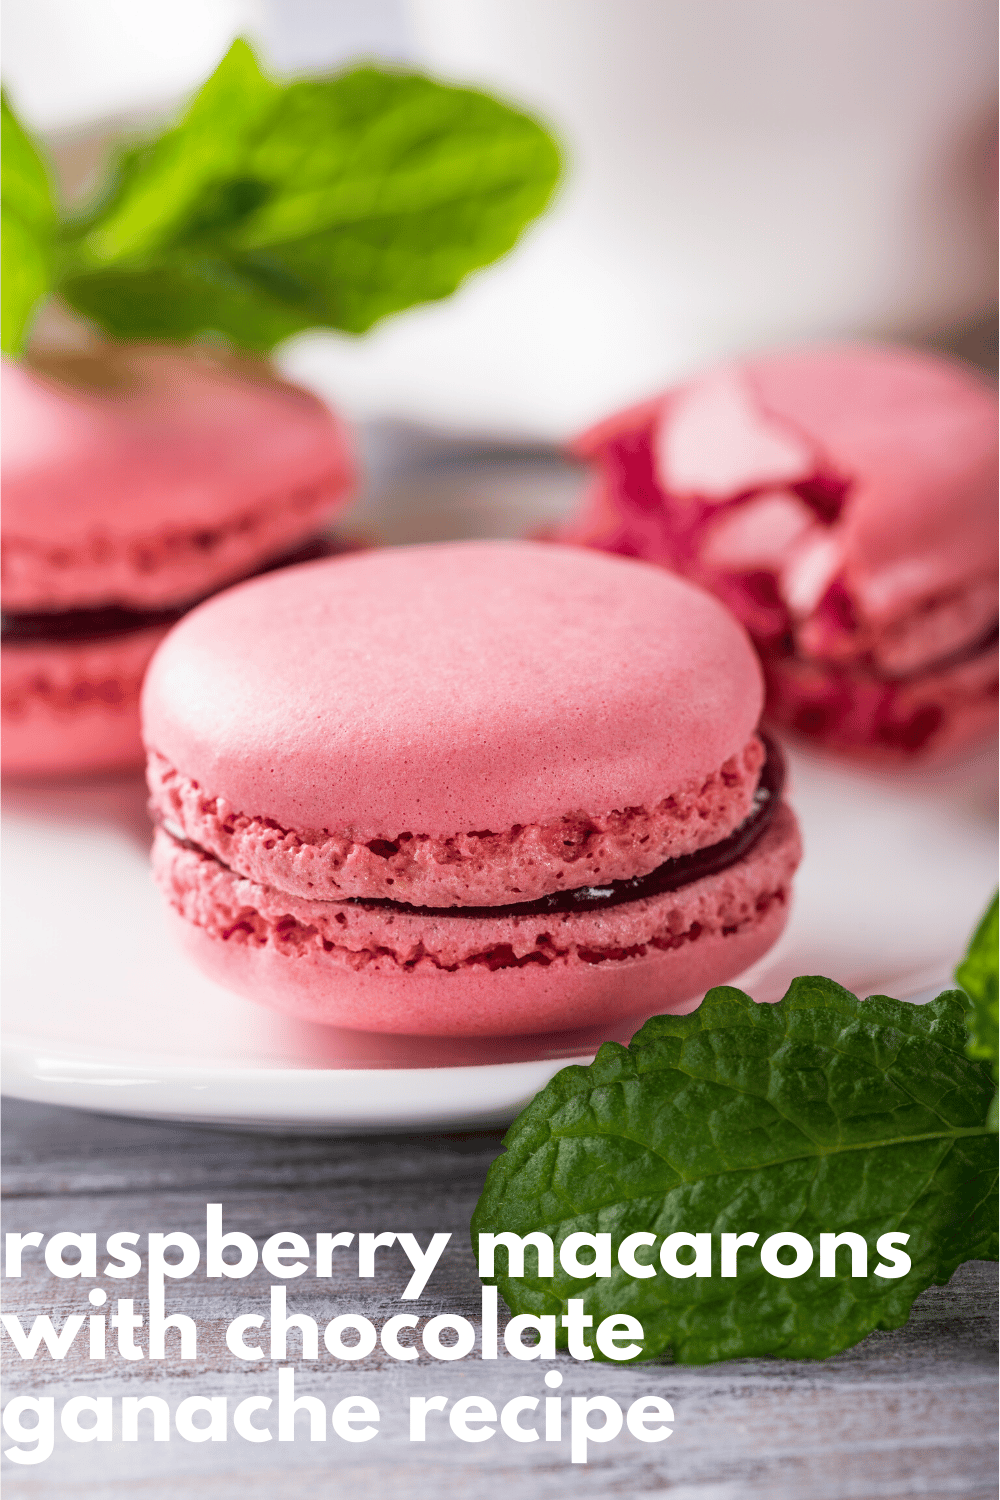 Raspberry Macarons Recipe with Chocolate Raspberry Ganache · Nourish ...